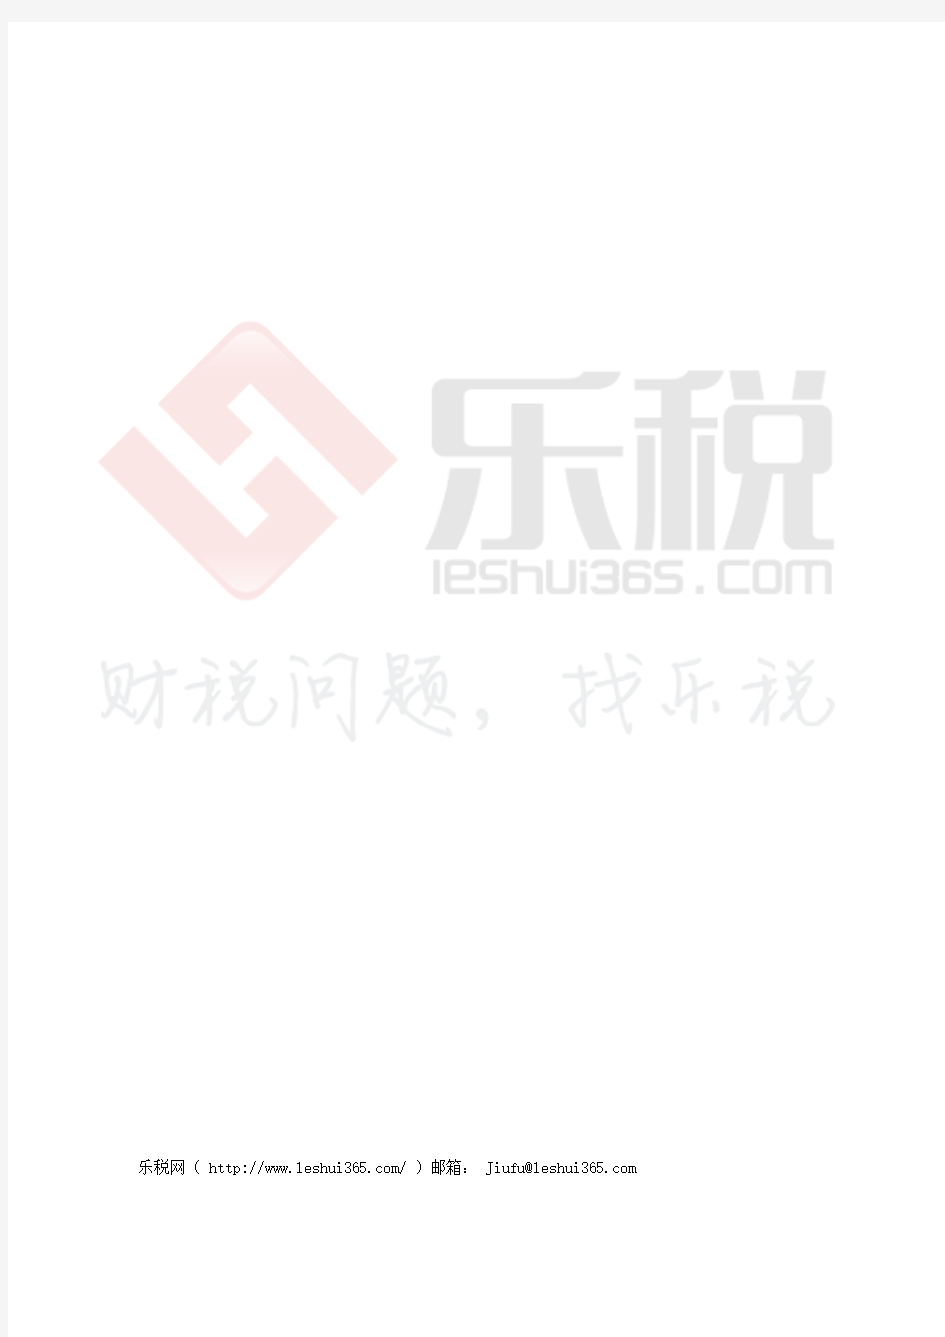 上海市财政局关于印发《上海市市级机关差旅住宿费标准明细表》的通知